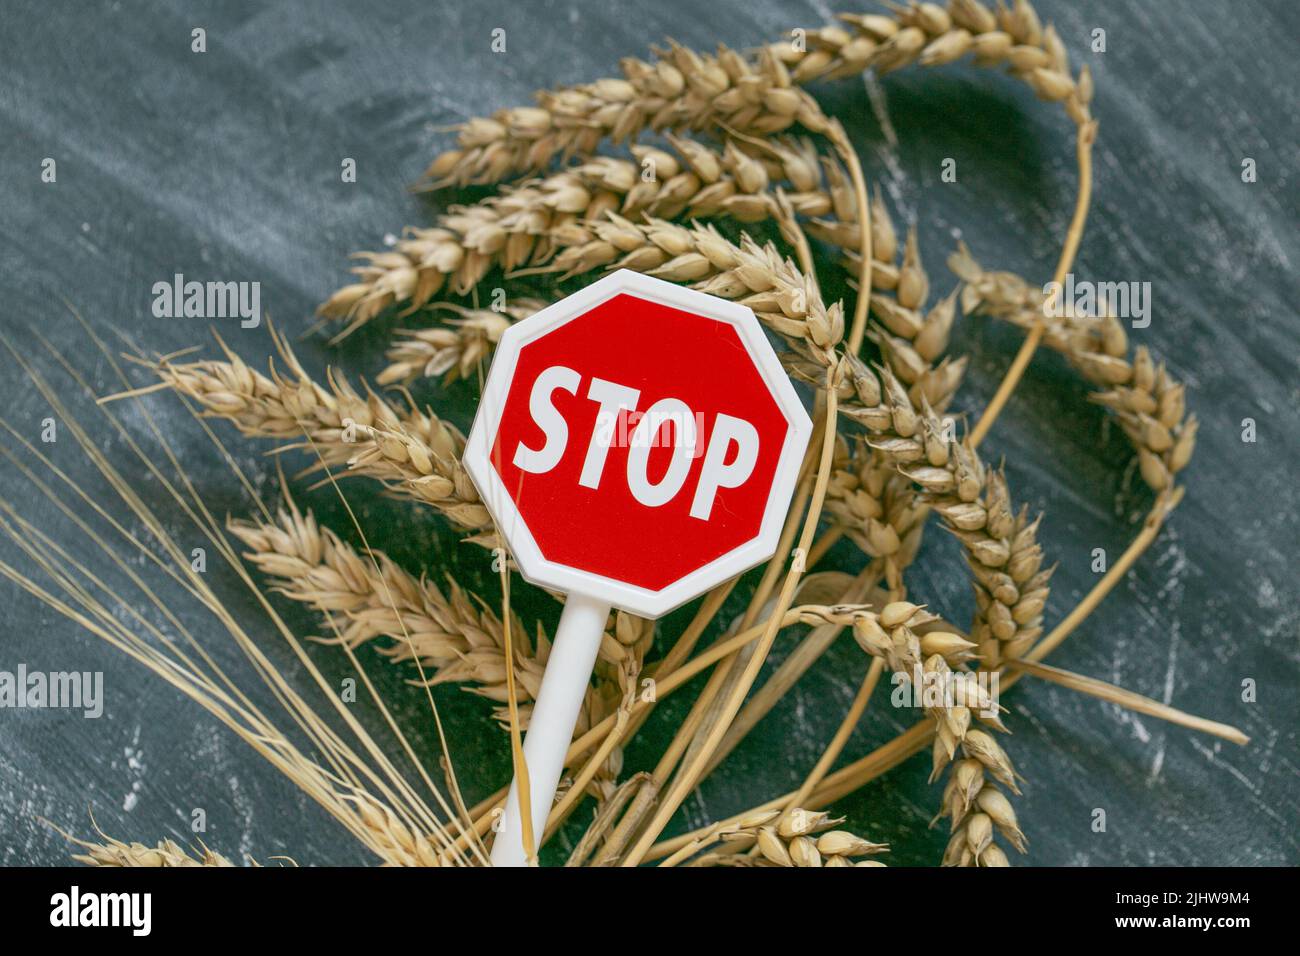 Weizenohren und rotes Stoppschild auf schwarzem Kreidetafel Hintergrund.Lebensmittelkrise.Import- und Exportverbot für Weizen.steigende Preise für Weizen Stockfoto